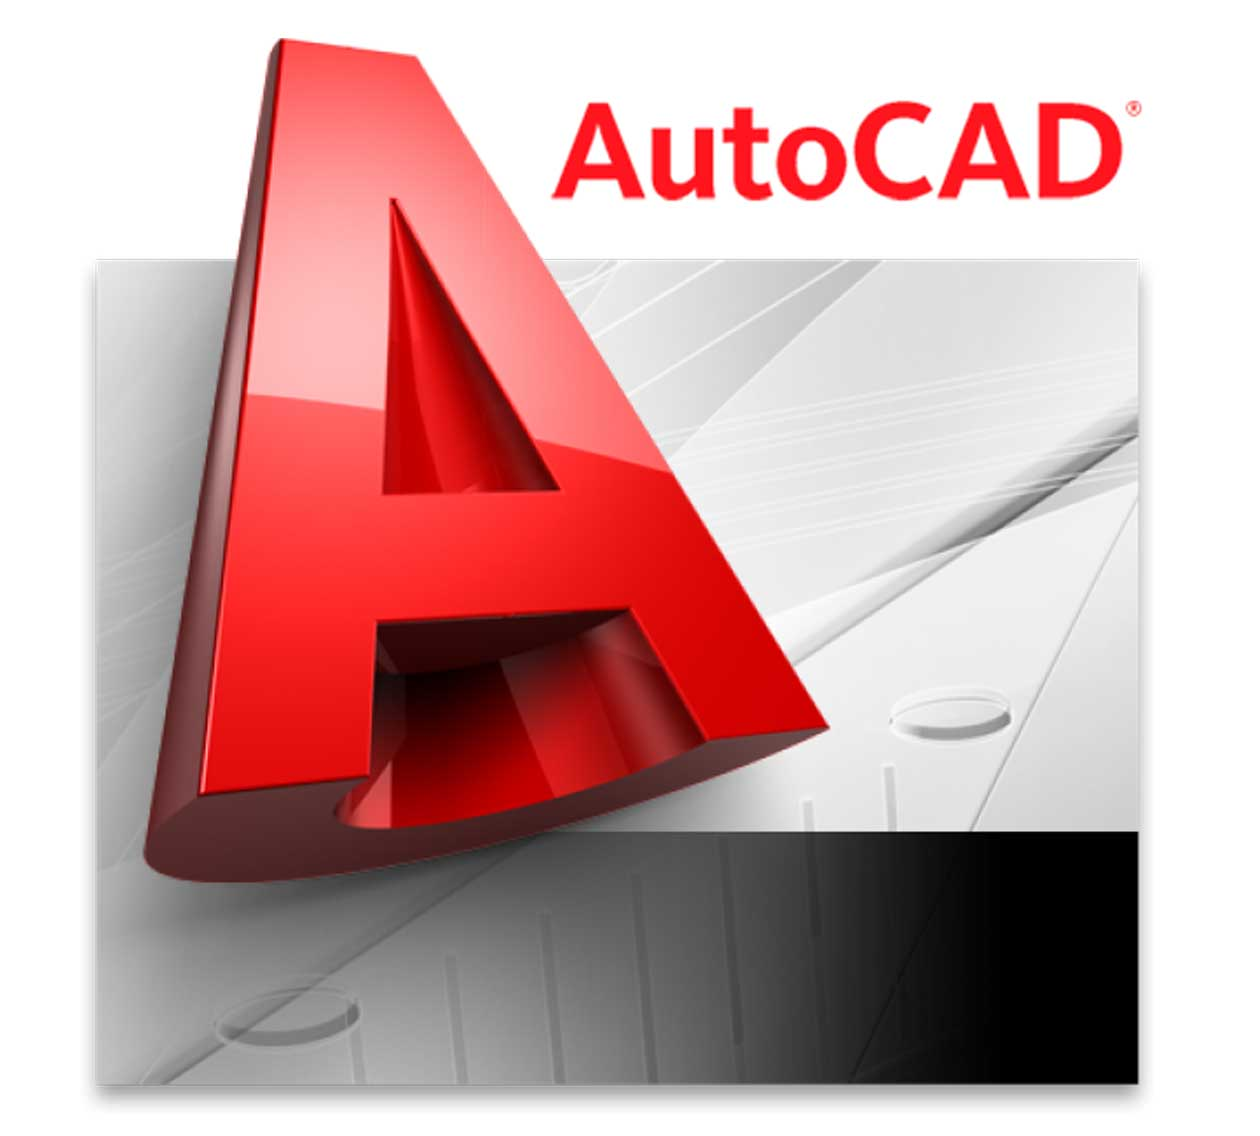 Giới thiệu từ A-Z phần mềm AutoCAD cho người mới bắt đầu